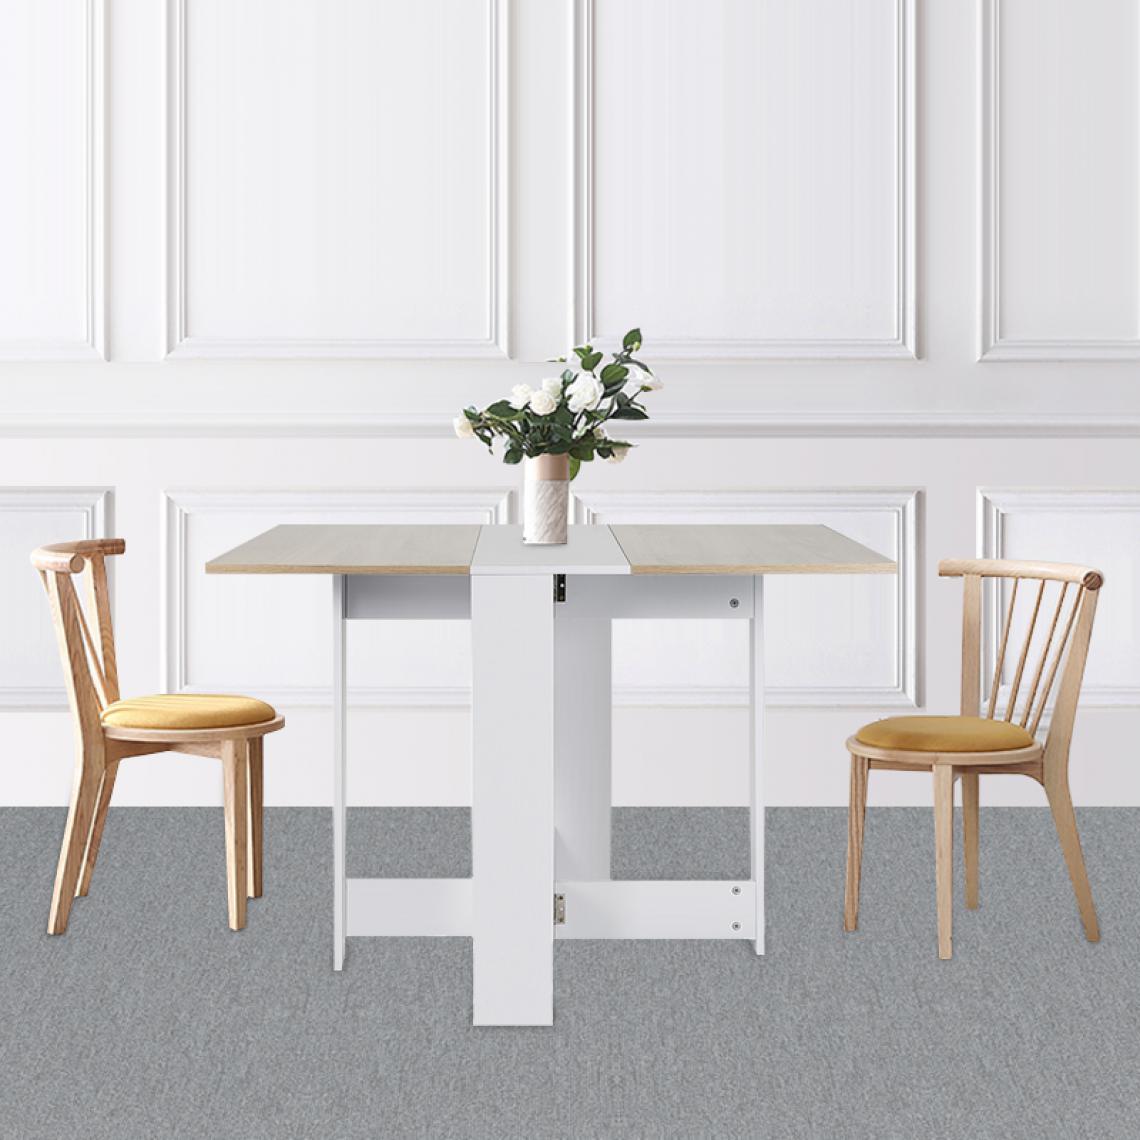 Jeobest - Table pliable design contemporain, simple, élégant et beau couleur chêne et blanc - Tables à manger